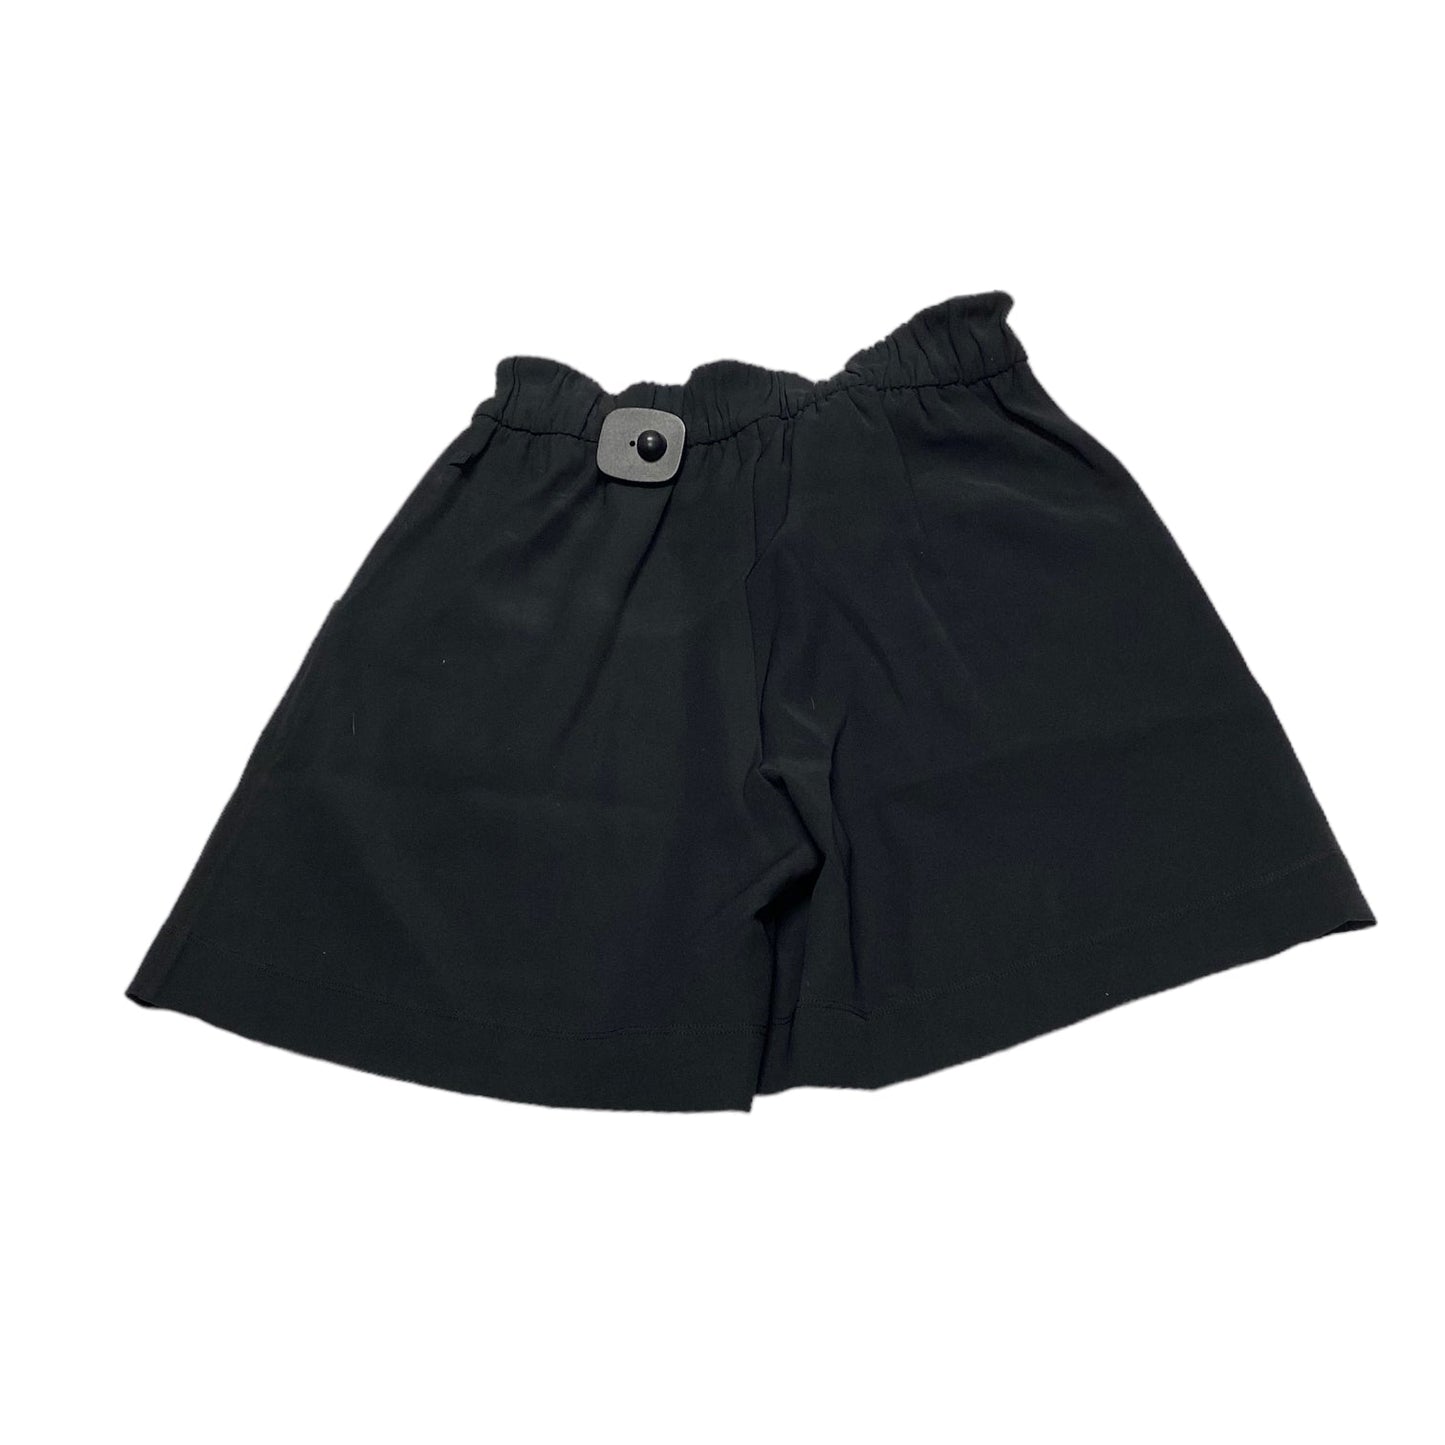 Athletic Shorts By Lululemon  Size: 4